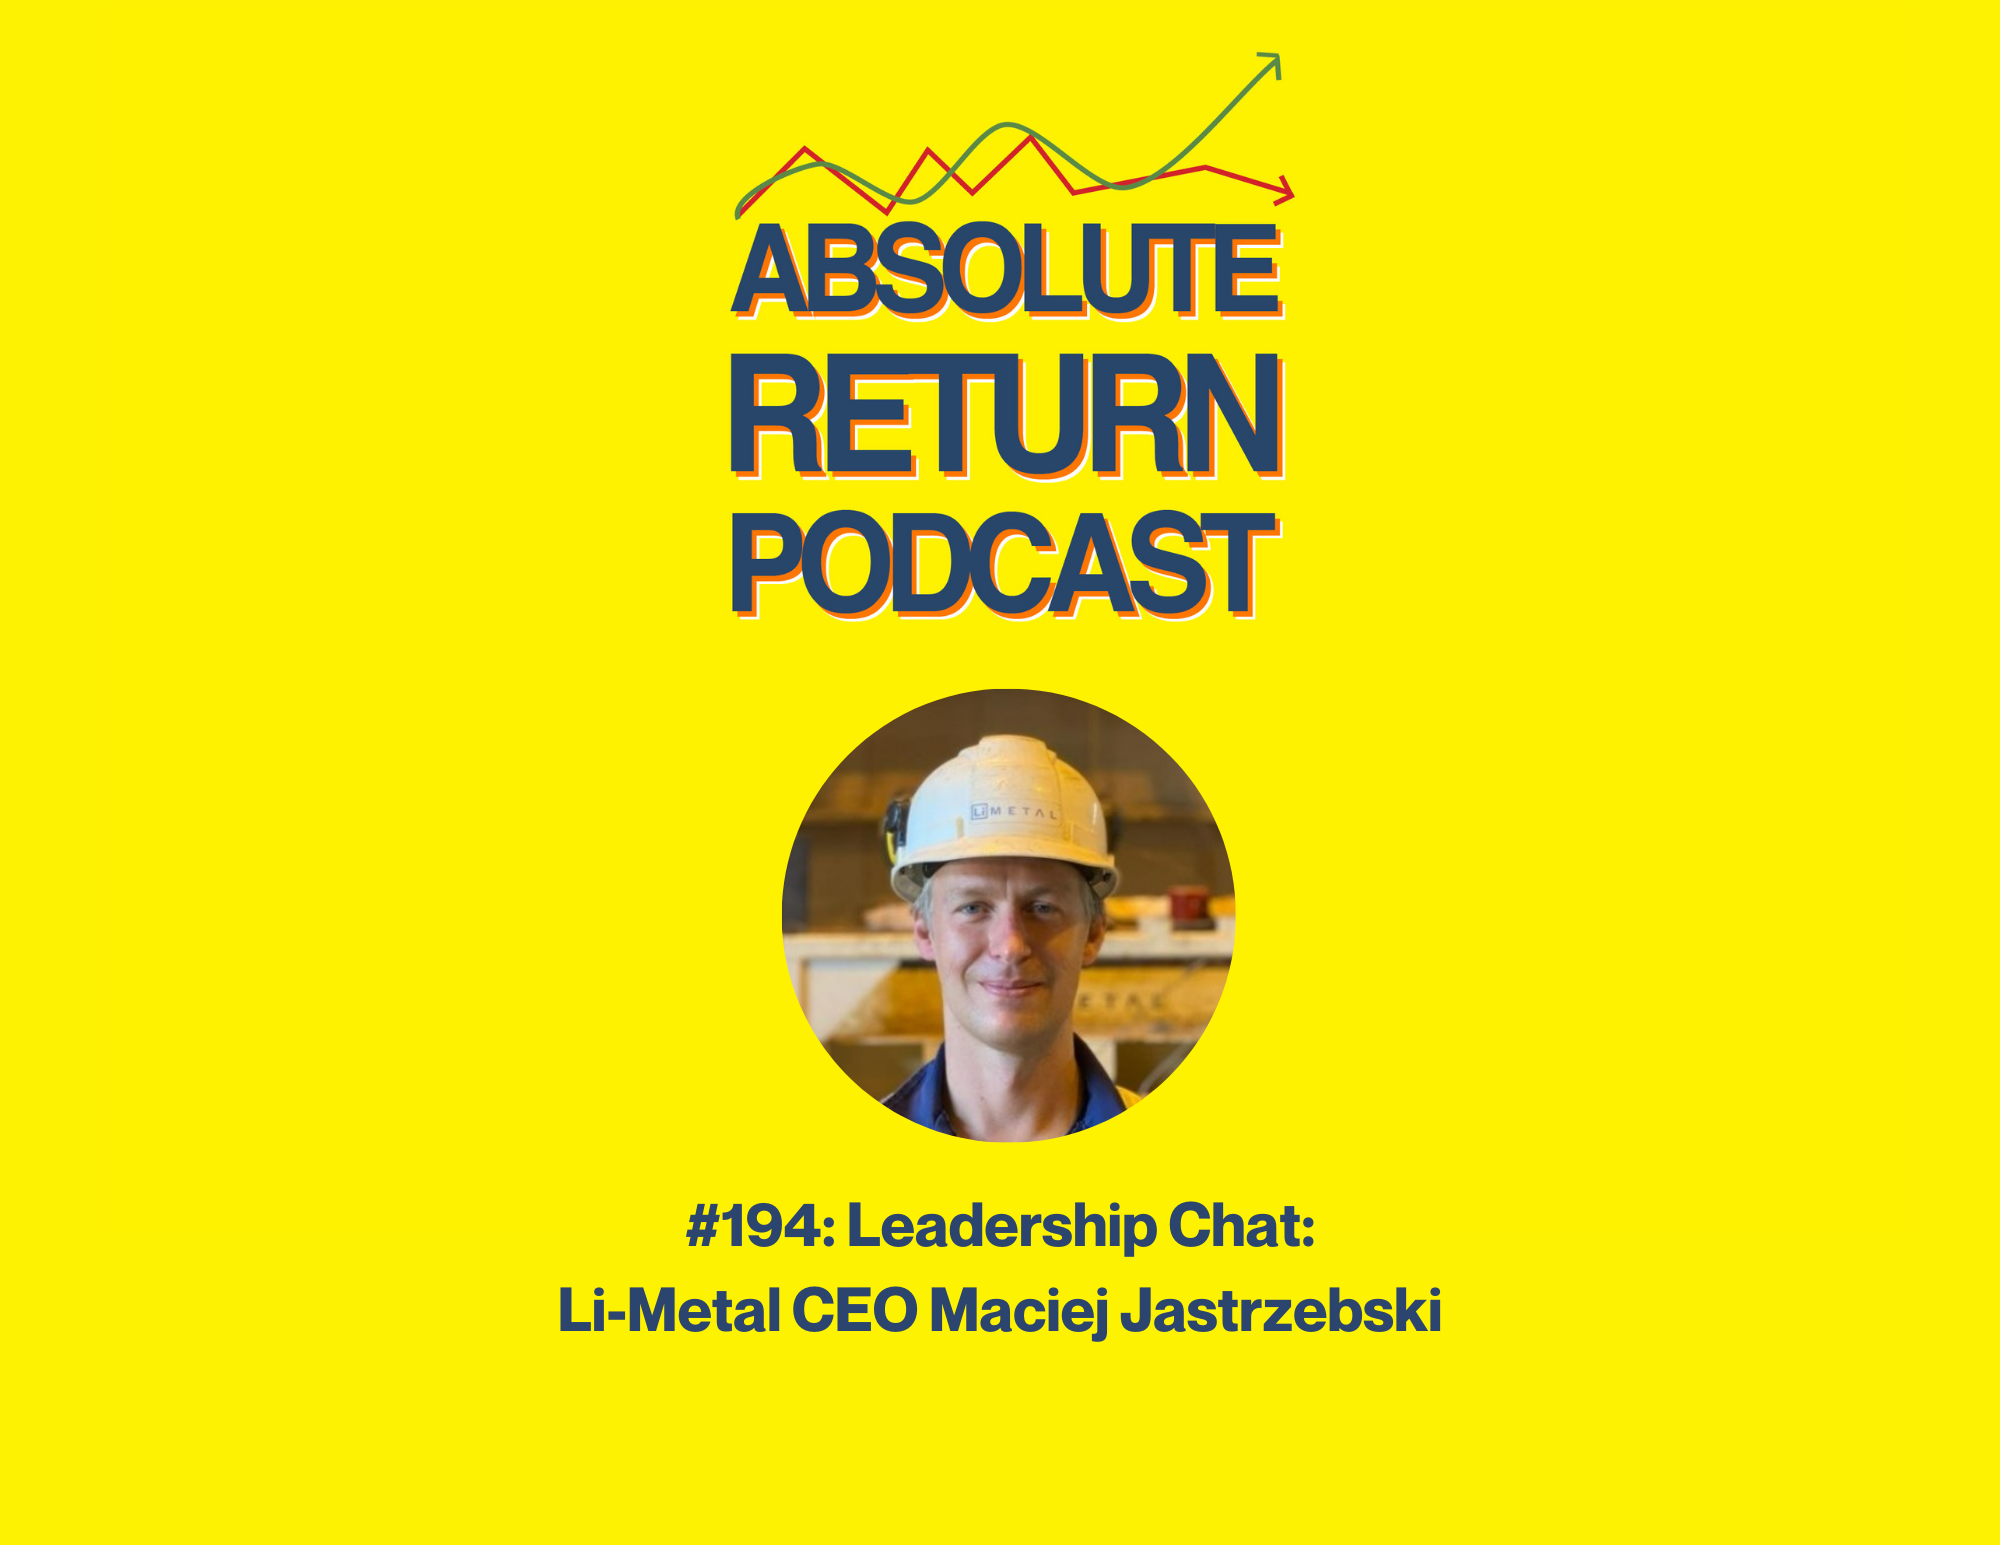 Absolute Return Podcast #194: Leadership Chat: Li-Metal CEO Maciej Jastrzebski